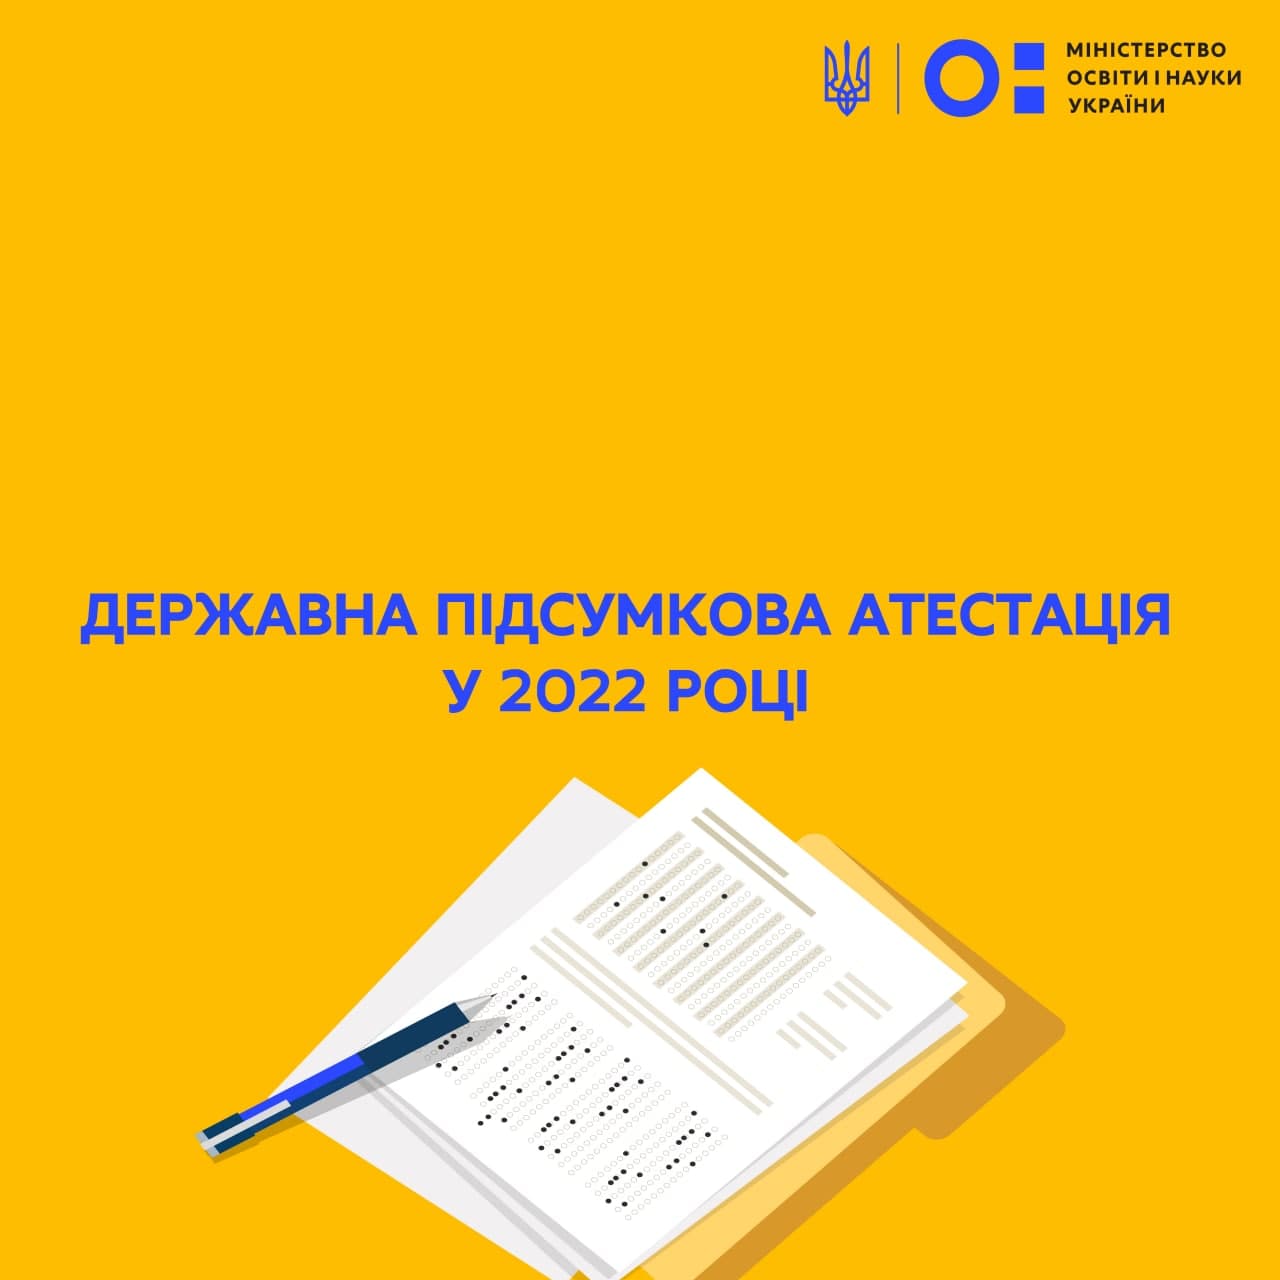 Державна підсумкова атестація у 2022 році – тривають консультації та обговорення | Міністерство освіти і науки України